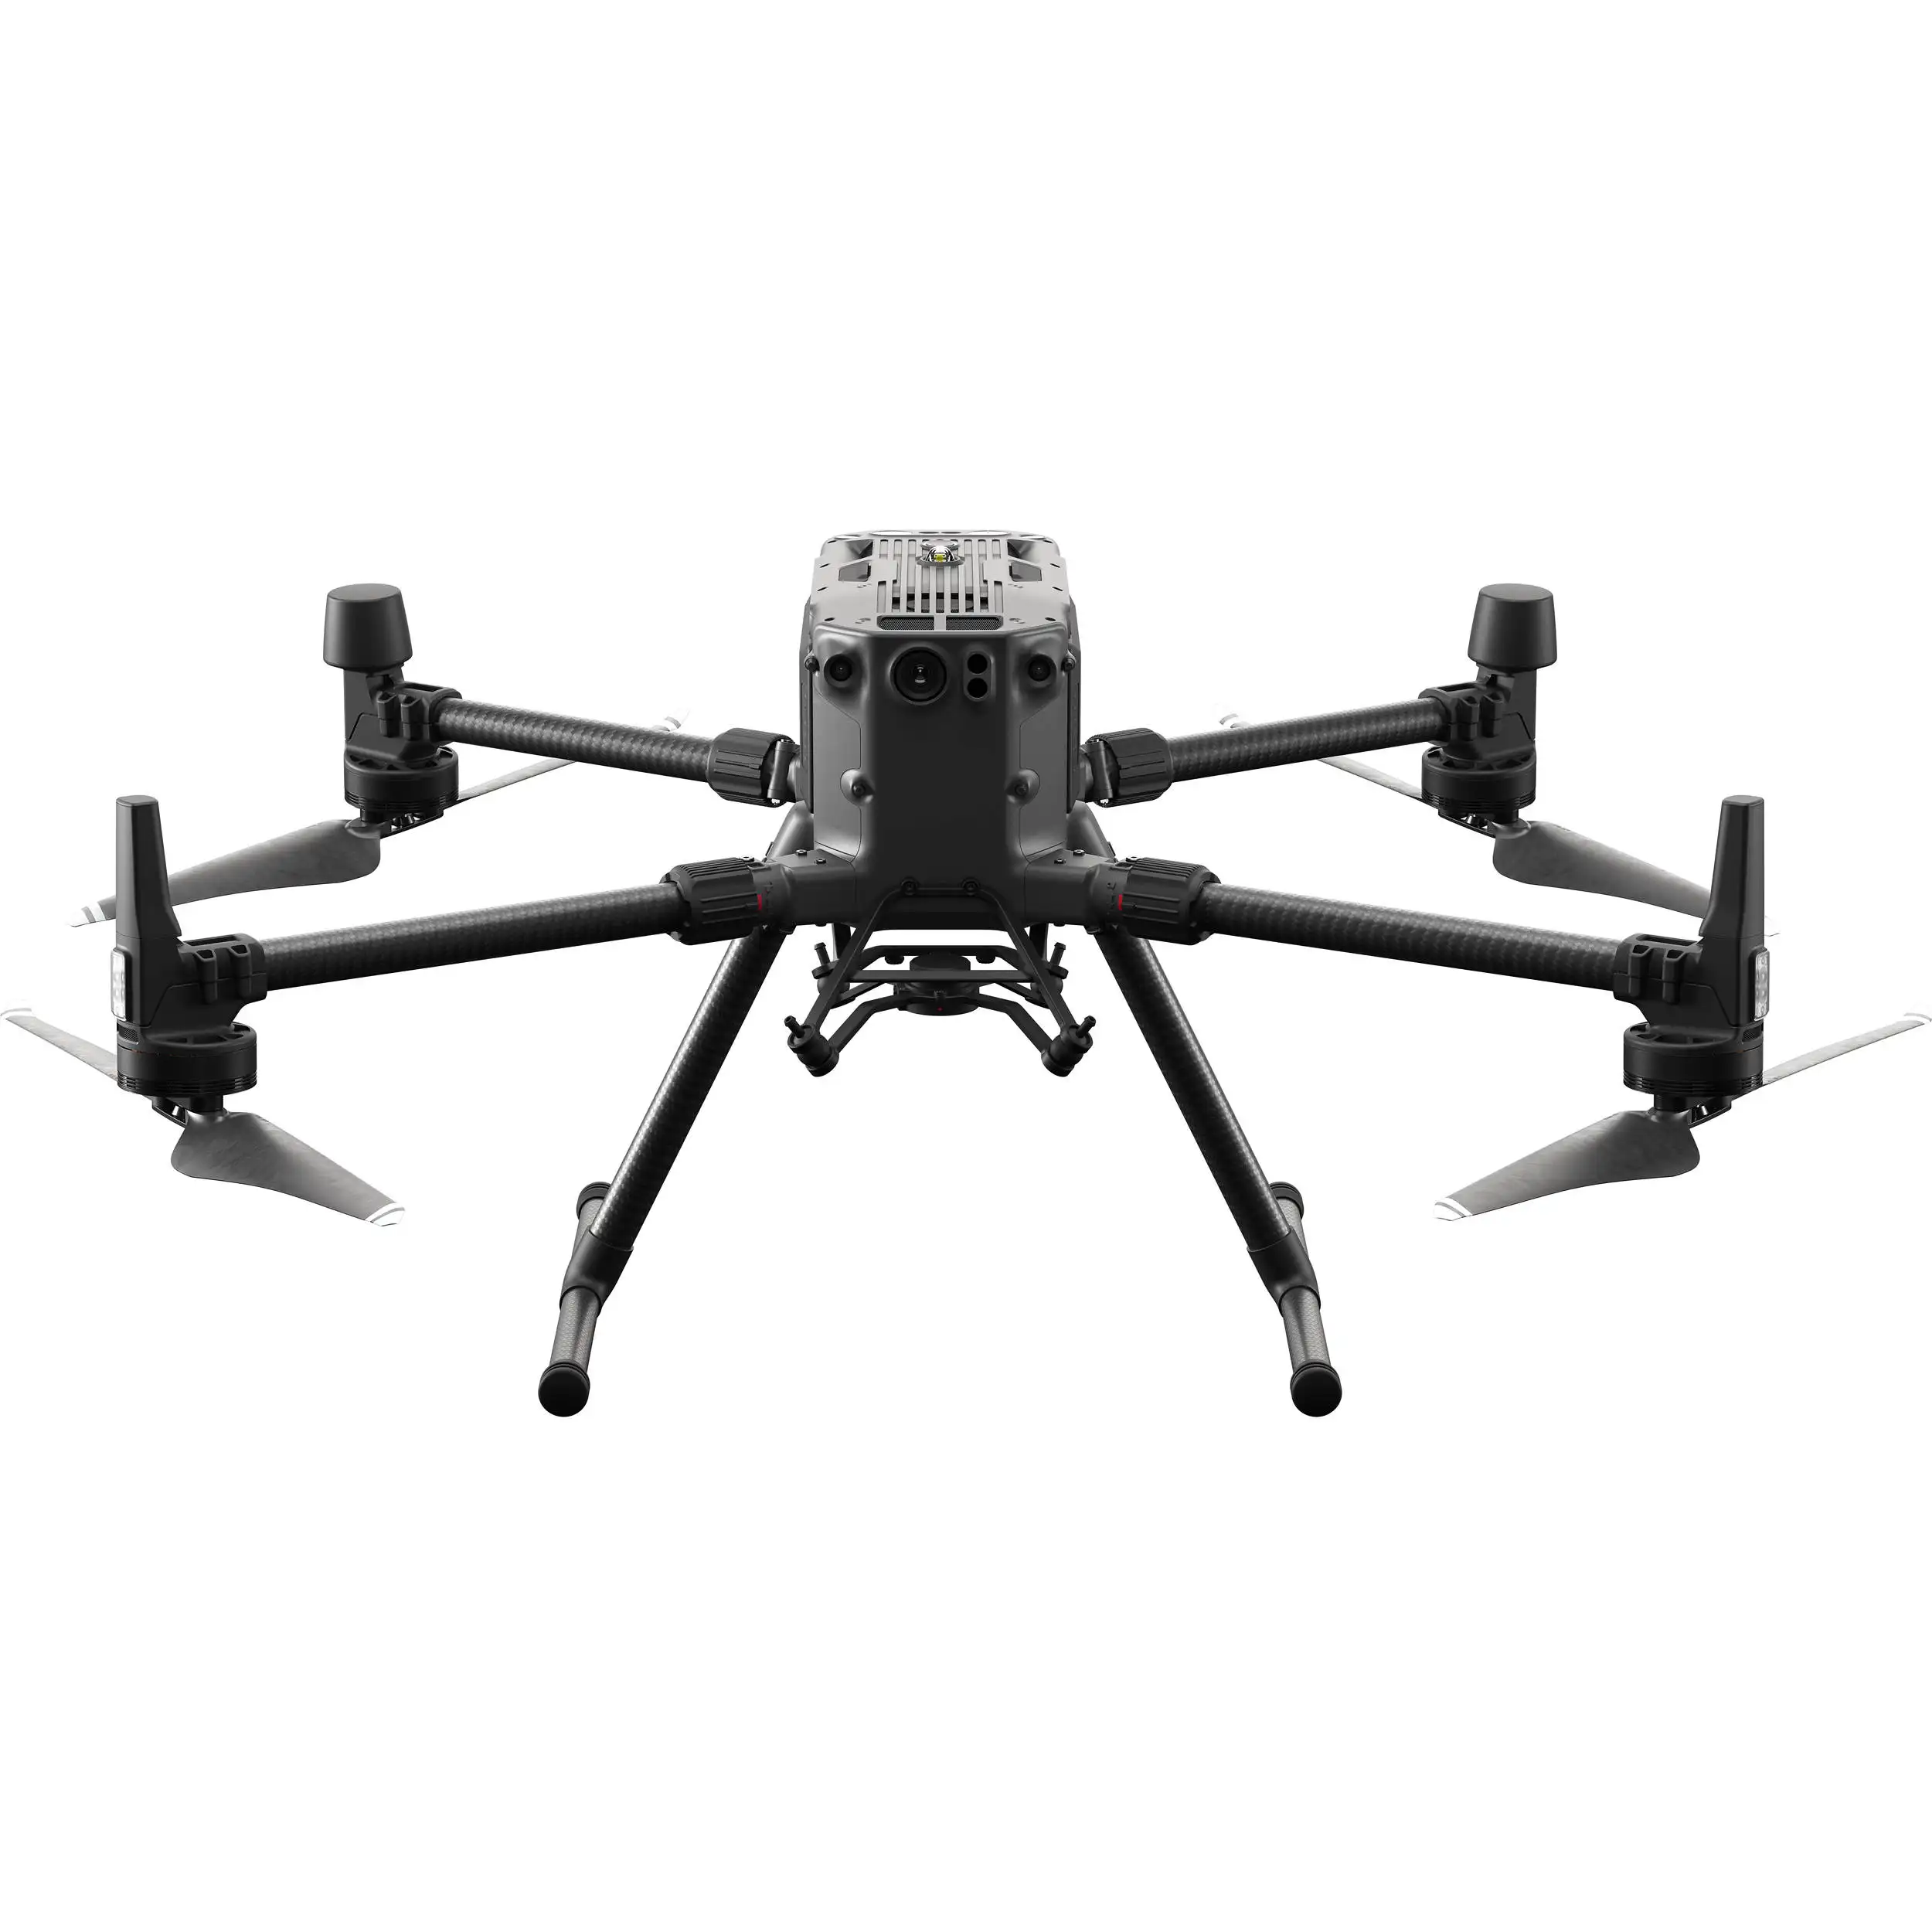 Originele M300 Rtk Professionele Drones Voor Mapping Landmeetkundige Patrouilleren Beveiliging